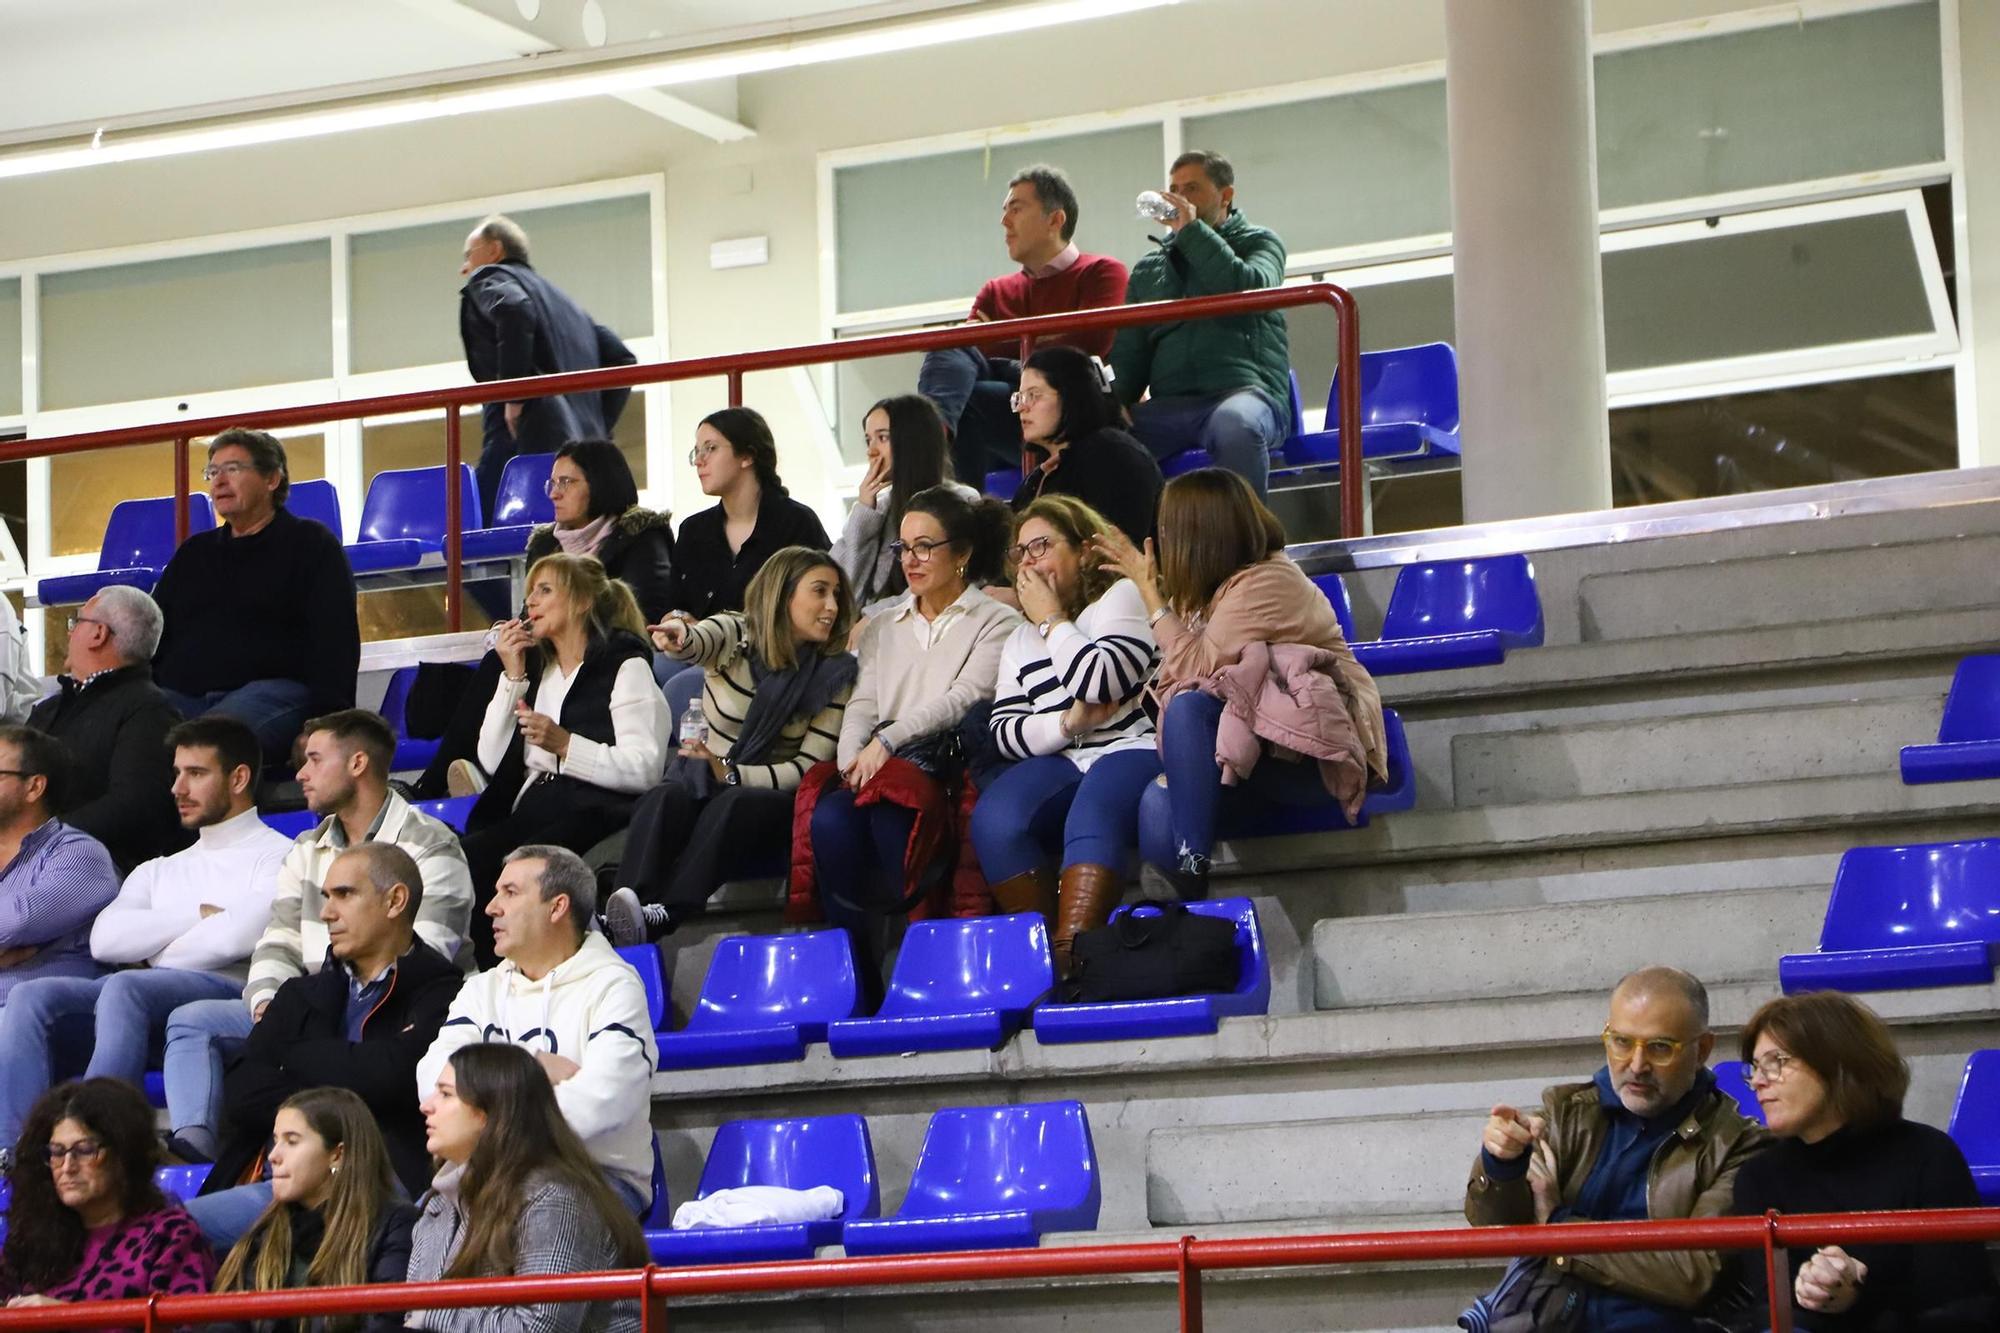 UCB-Coria: las imágenes del partido de Liga EBA en Valdeolleros